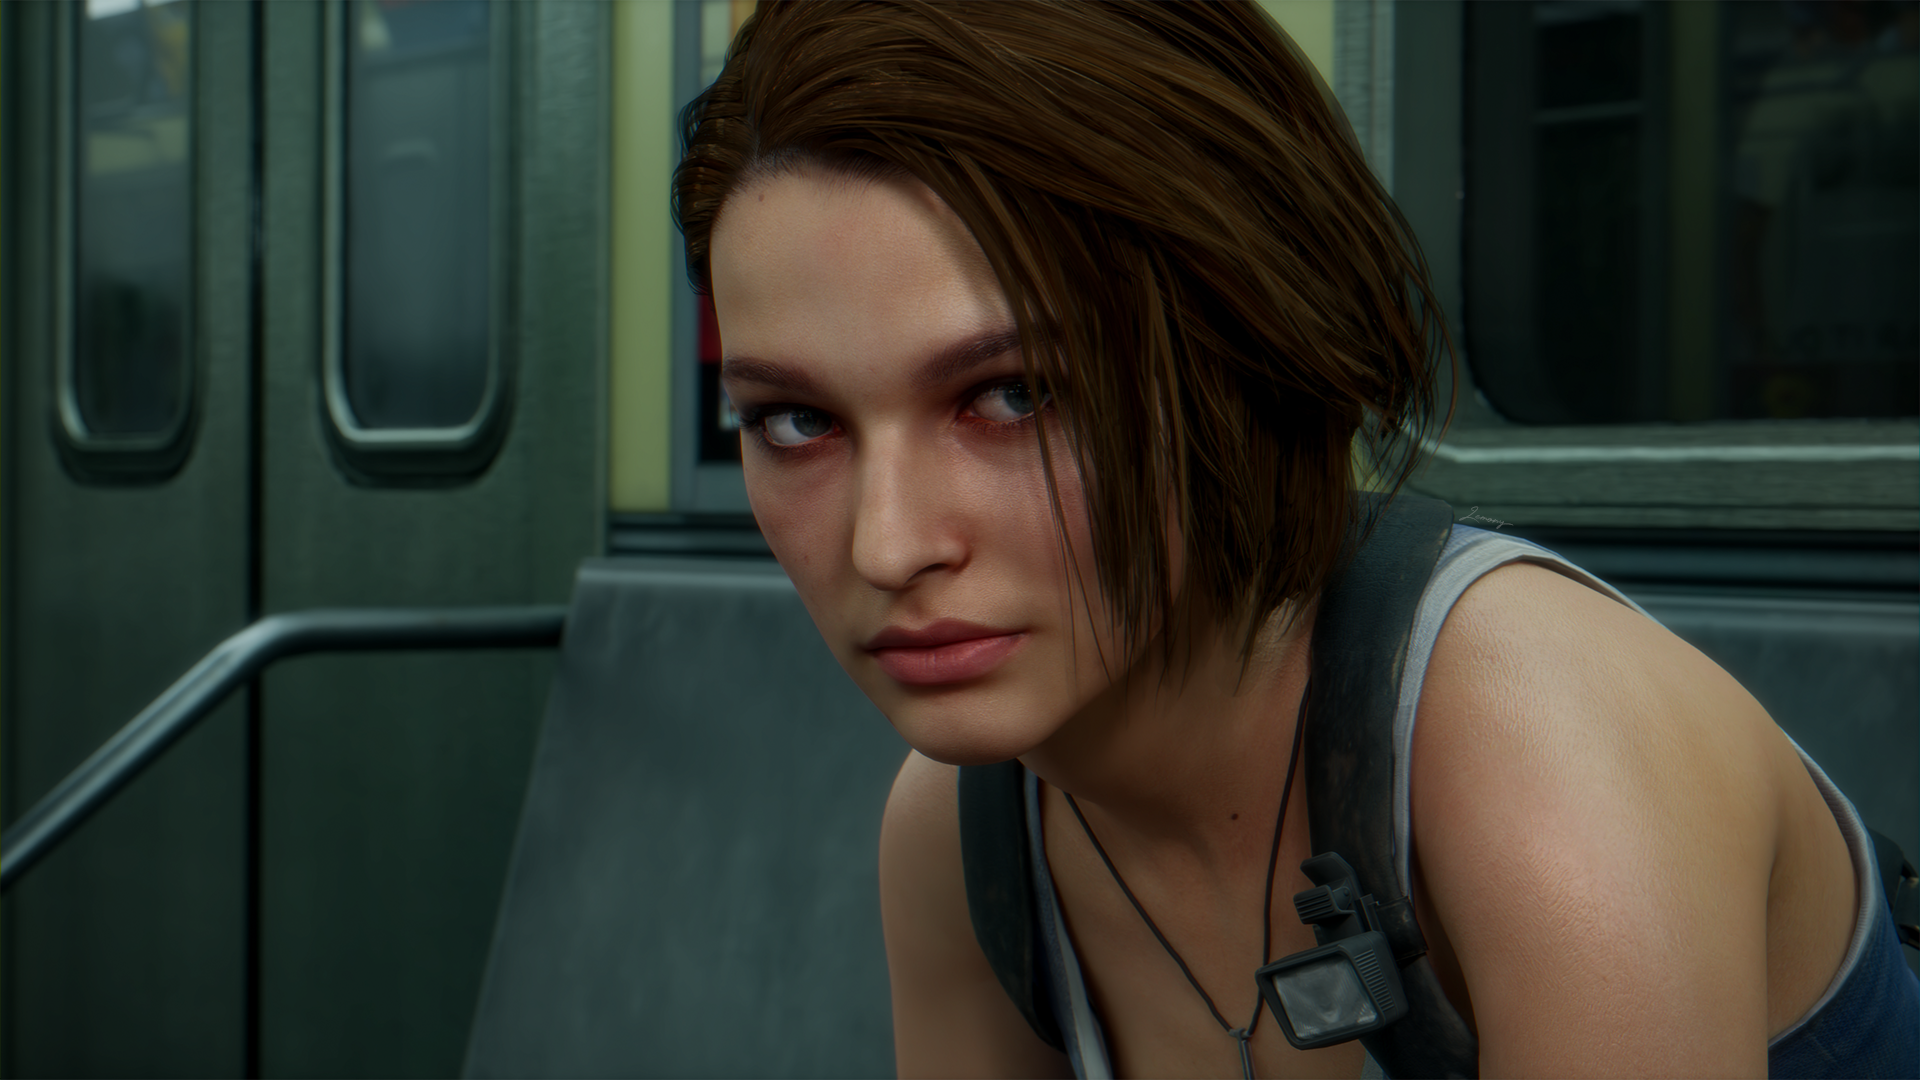 Jill Valentine - Resident Evil 3 Remake (EEVEE) by FrankAlcantara